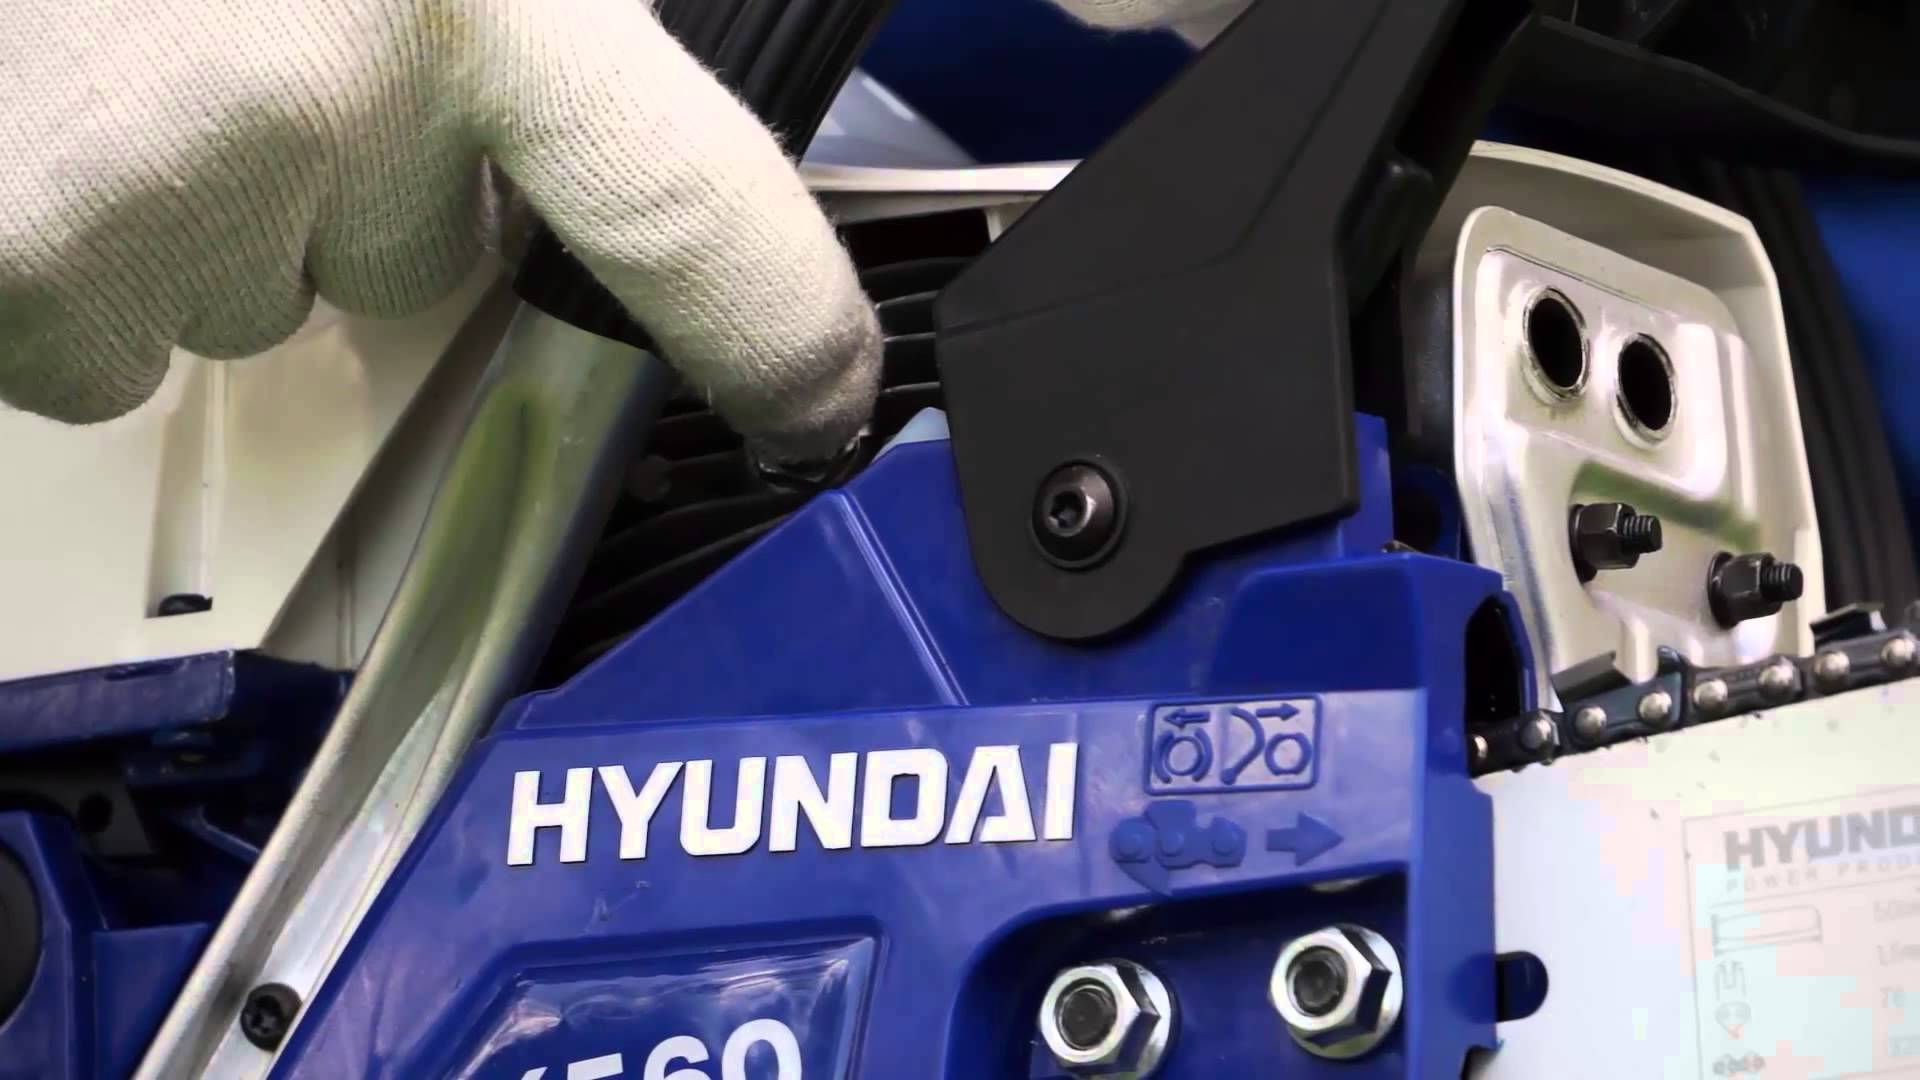 Hyundai kettingzaagtest en ervaringen: een uitgebreid overzicht van de modelseries Hyundai kettingzagen